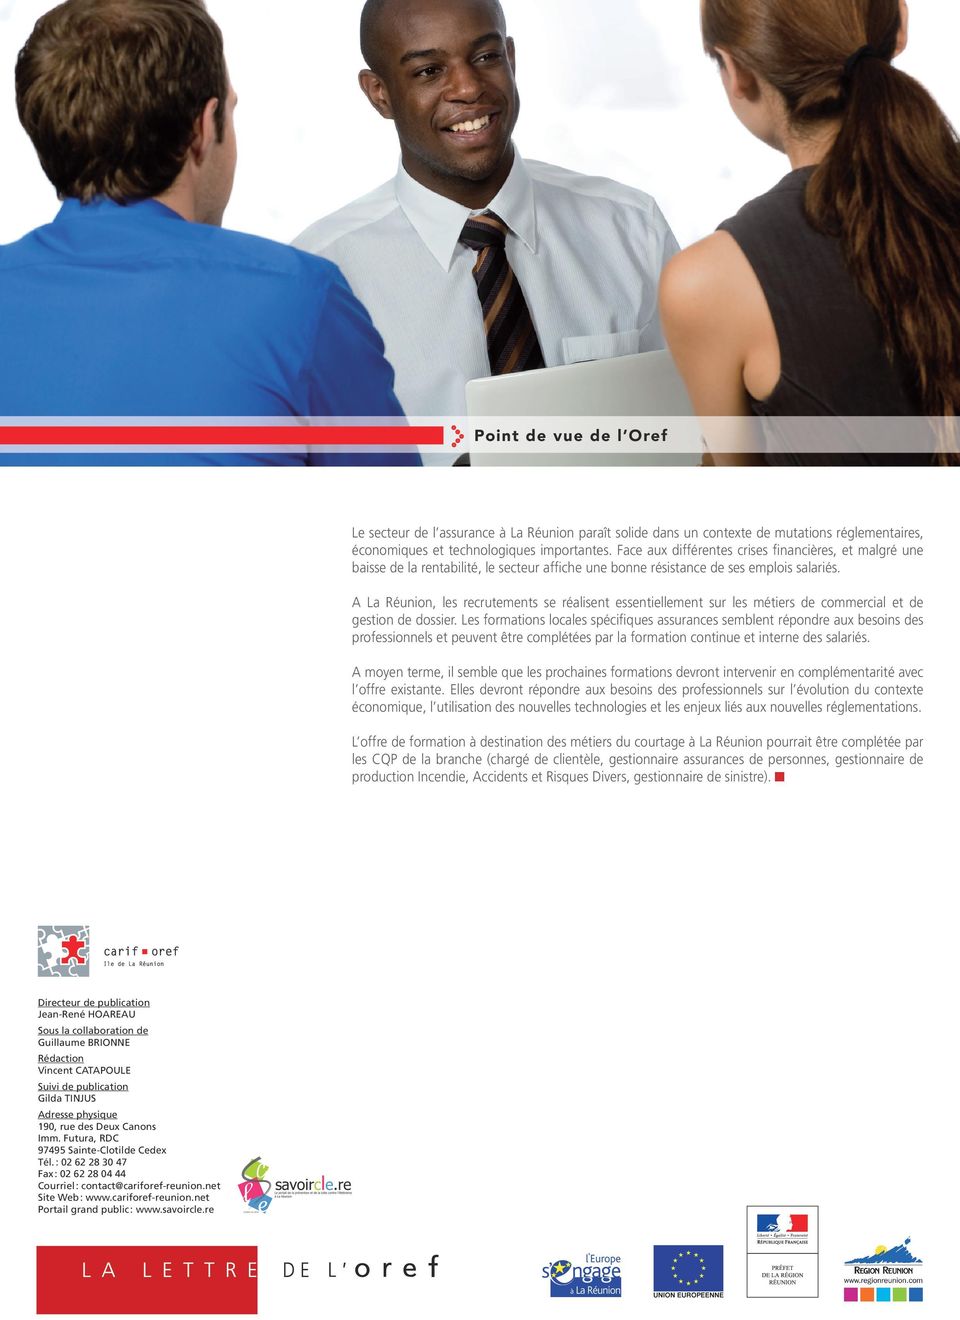 A La Réunion, les recrutements se réalisent essentiellement sur les métiers de commercial et de gestion de dossier.